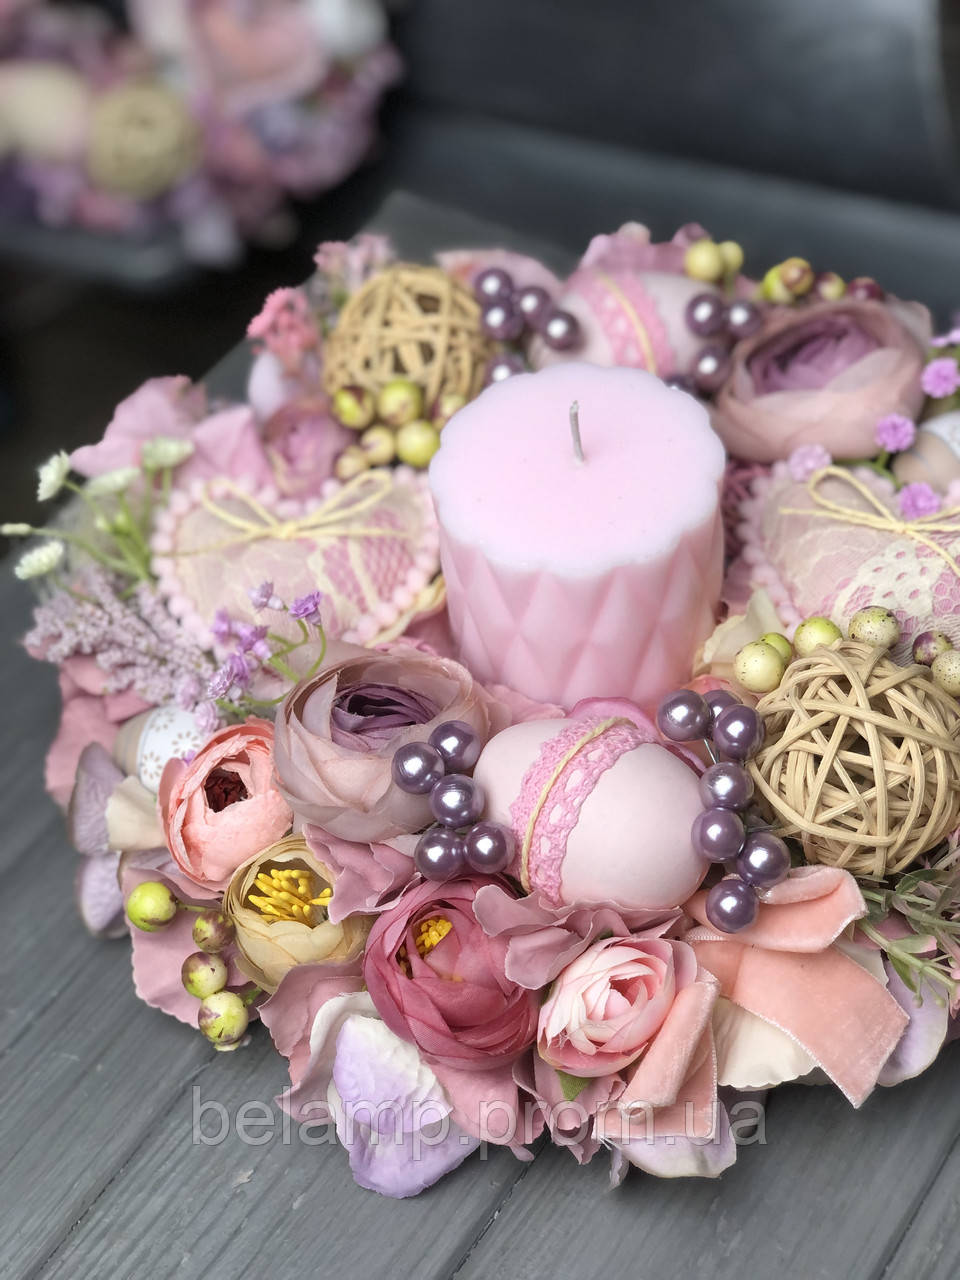 Пасхальная композиция на стол со свечей в сиреневых и розовых оттенках